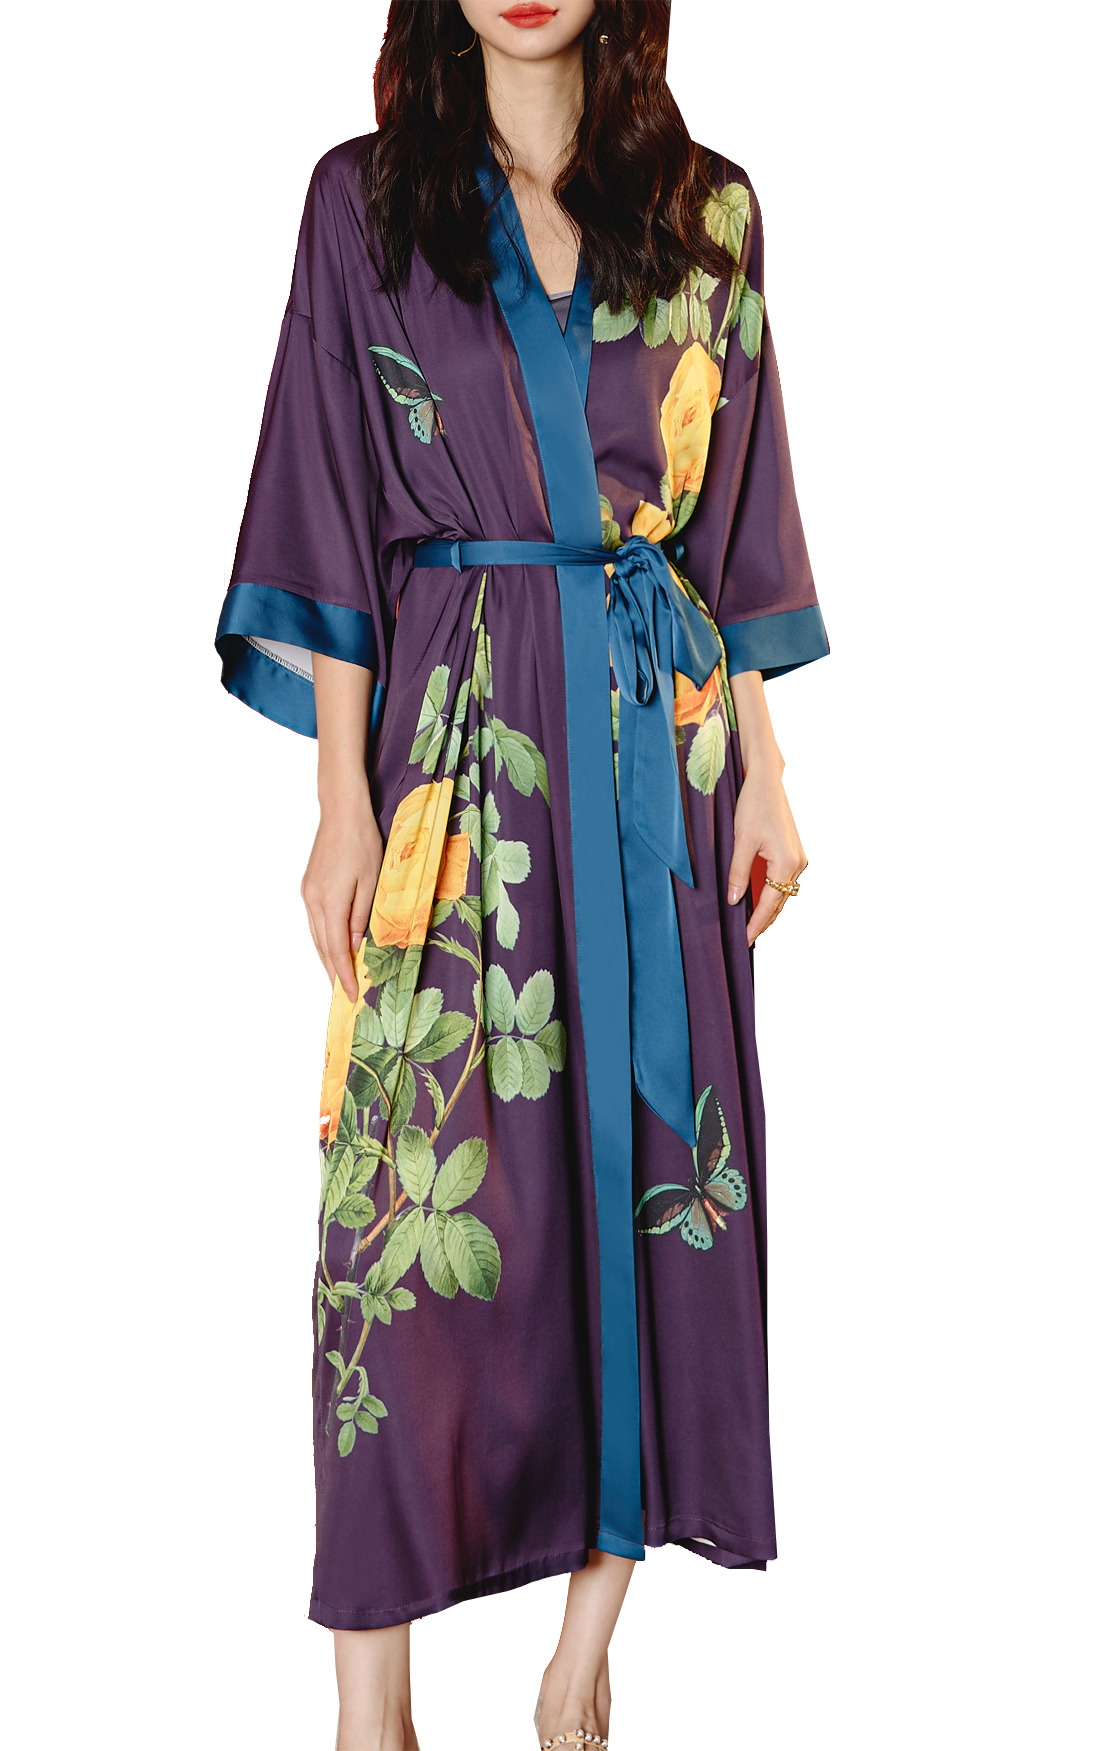 Kobiety satynowe sutka sanna kimono szlafrok elegancki długi ślub druhny szlafrok Nightdress Summer Nightwear V Szyja trzy ćwierć rękawowe